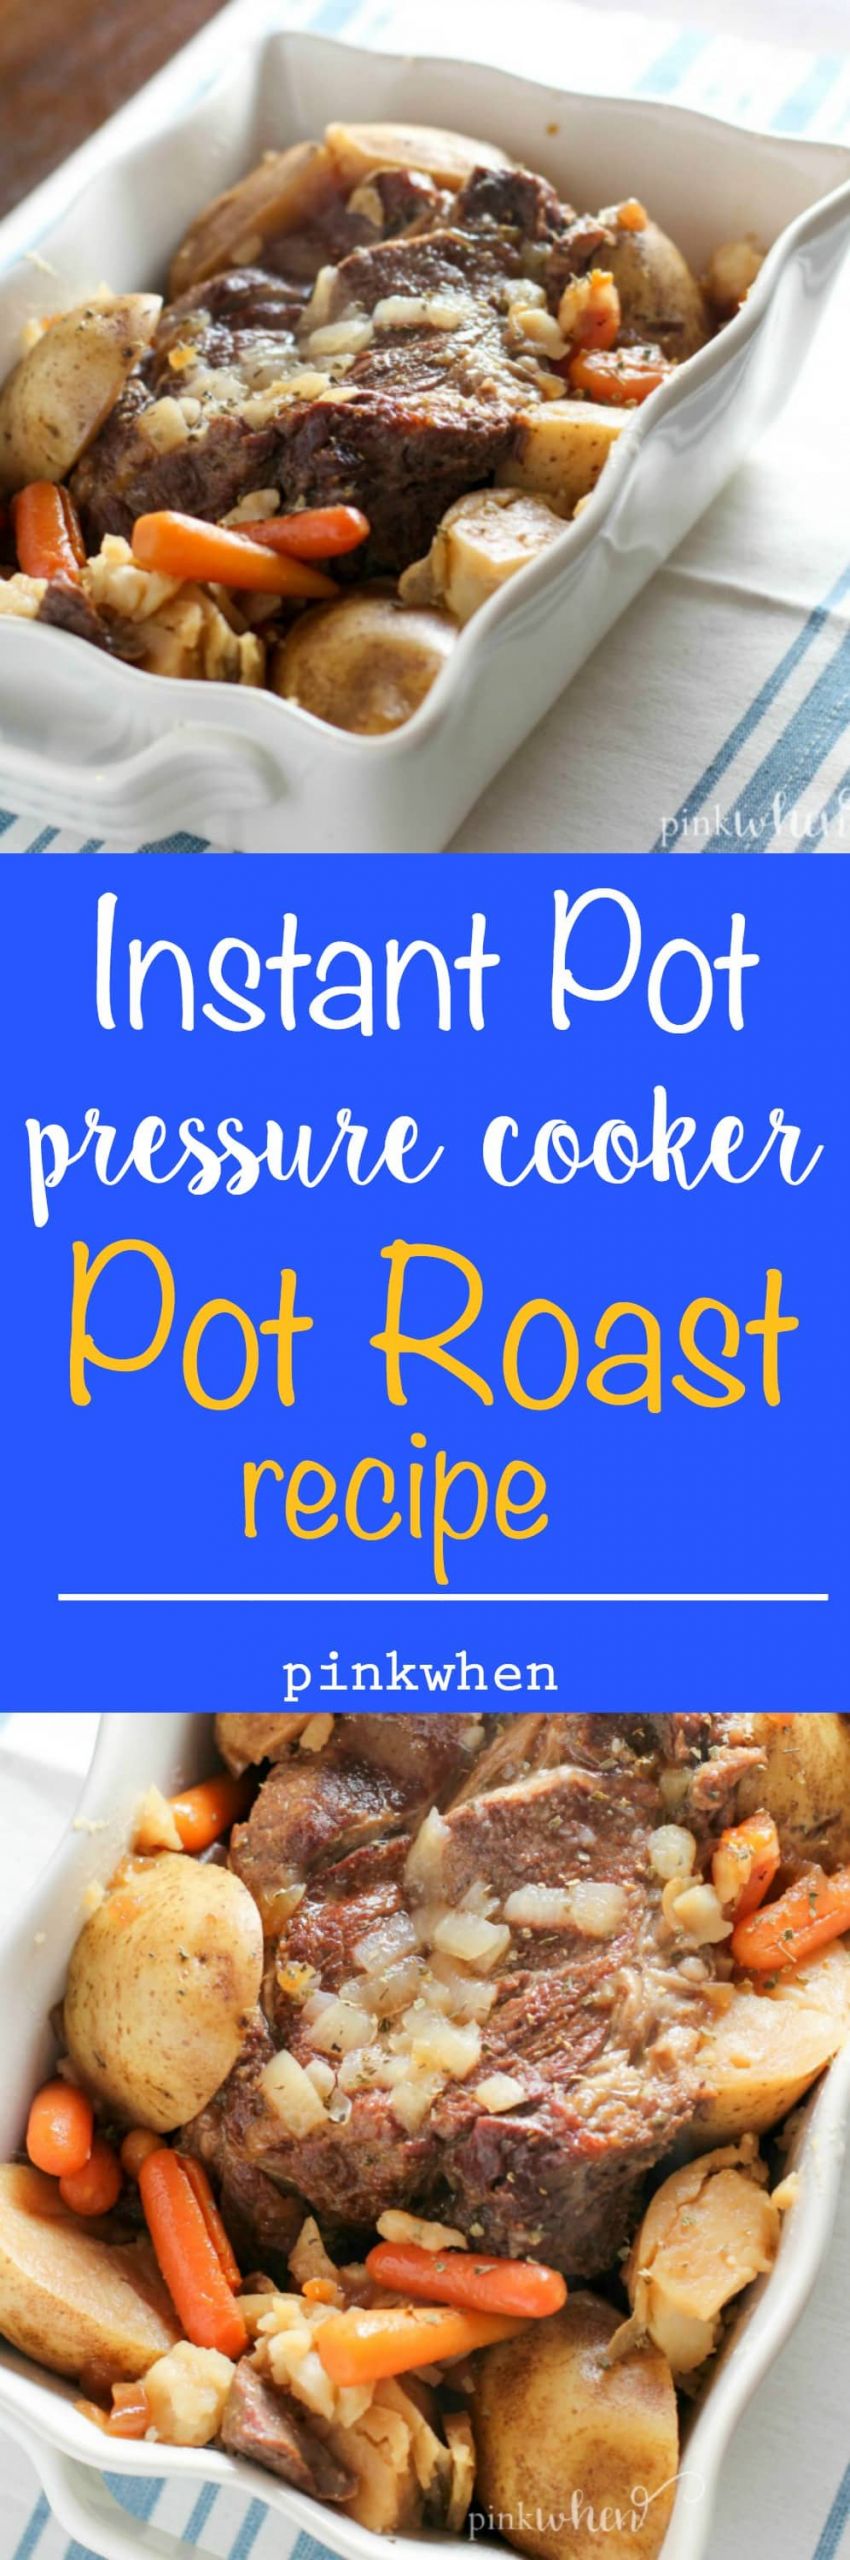 Instant Pot Pressure Cooker Recipes
 Instant Pot Pressure Cooker Pot Roast Recipe PinkWhen